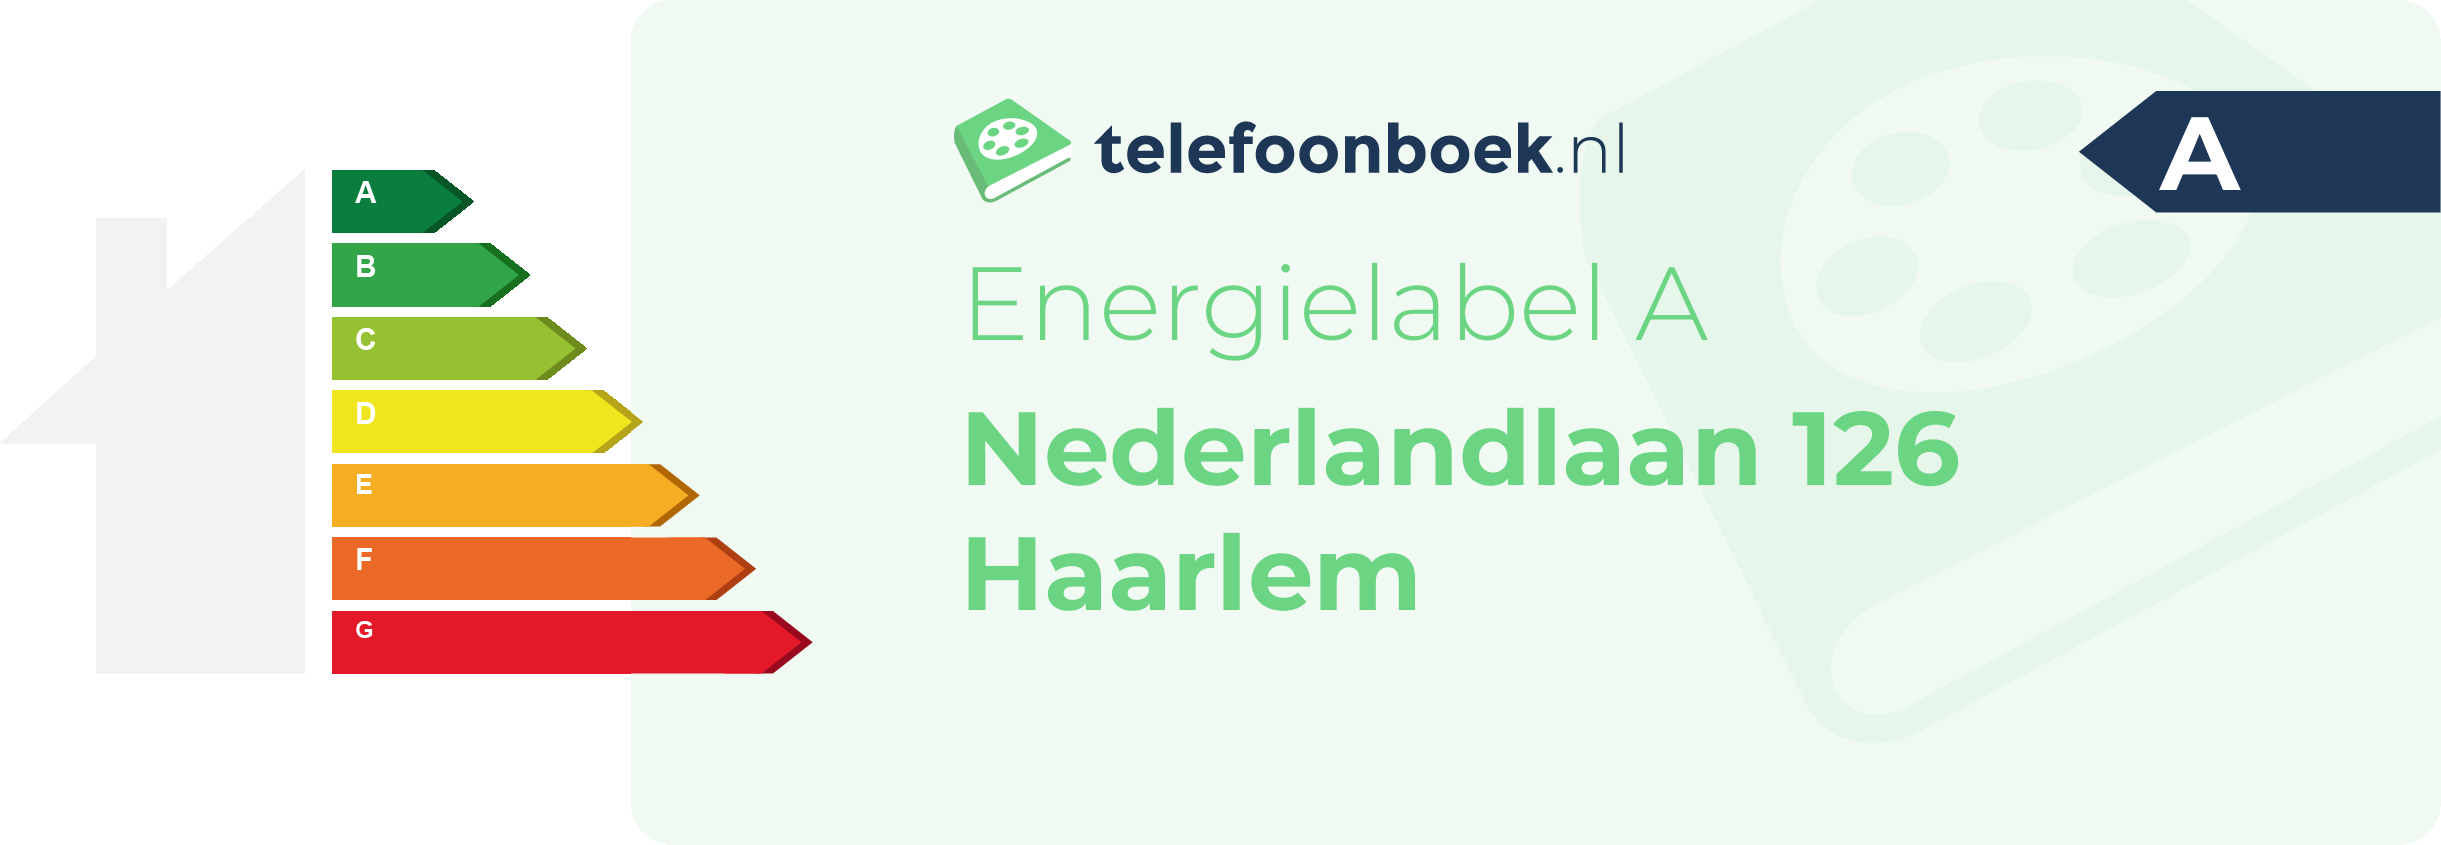 Energielabel Nederlandlaan 126 Haarlem